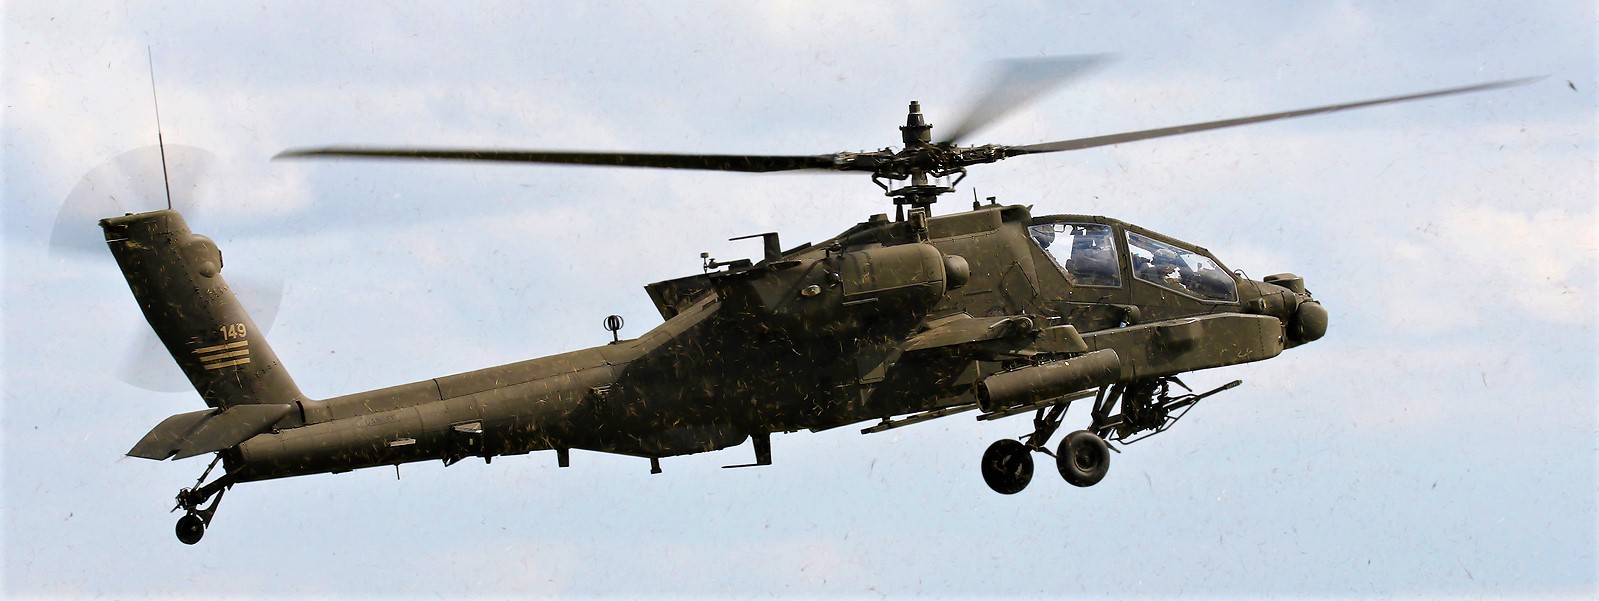 Επιχειρησιακά και πάλι τα επιθετικά ελικόπτερα ΑΗ-64Α της ΑΣ – Σωτήρια συμφωνία με ΗΑΕ